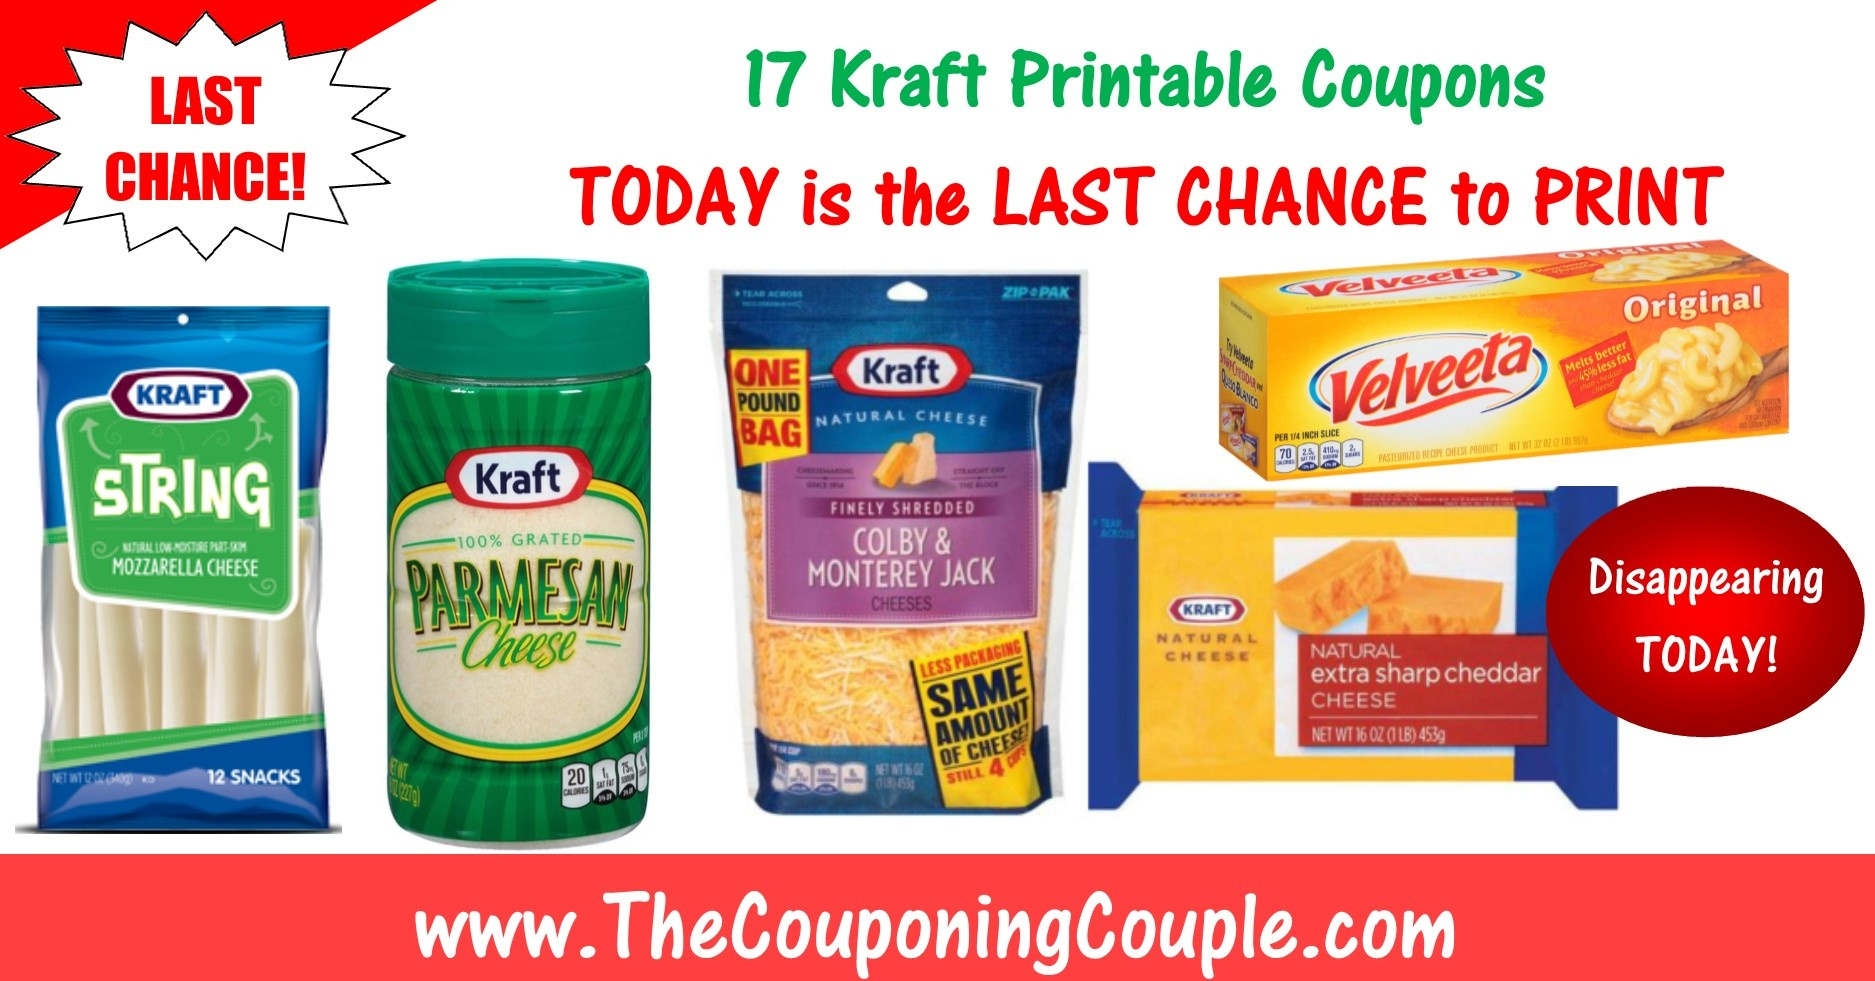 Kraft Cheese Coupons Printable with Free Printable Kraft Food Coupons